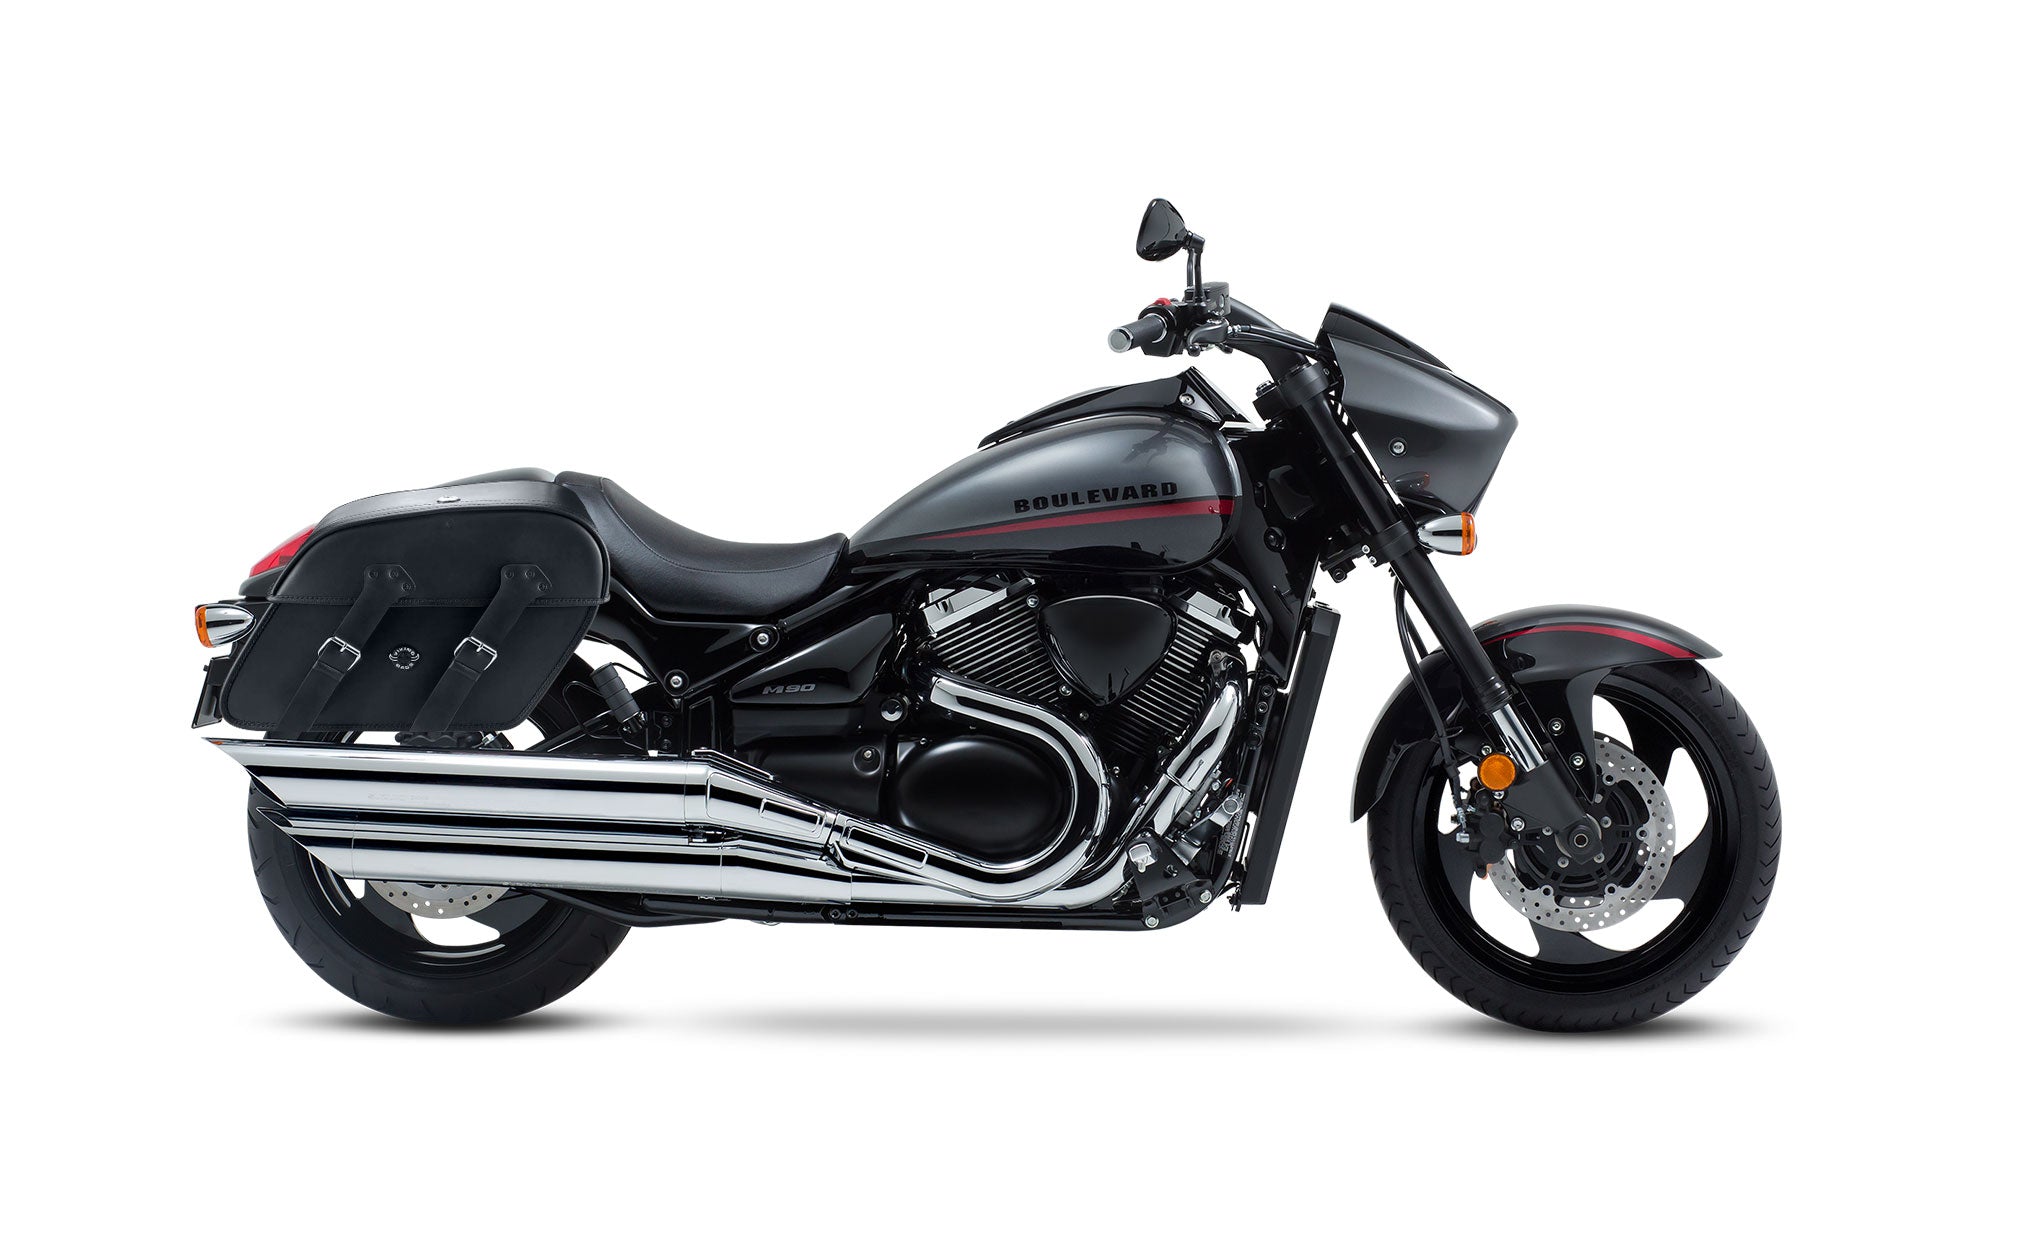 Viking Raven Extra Large Suzuki Boulevard M90 Vz1500 Leather Motorcycle Saddlebags on Bike Photo @expand